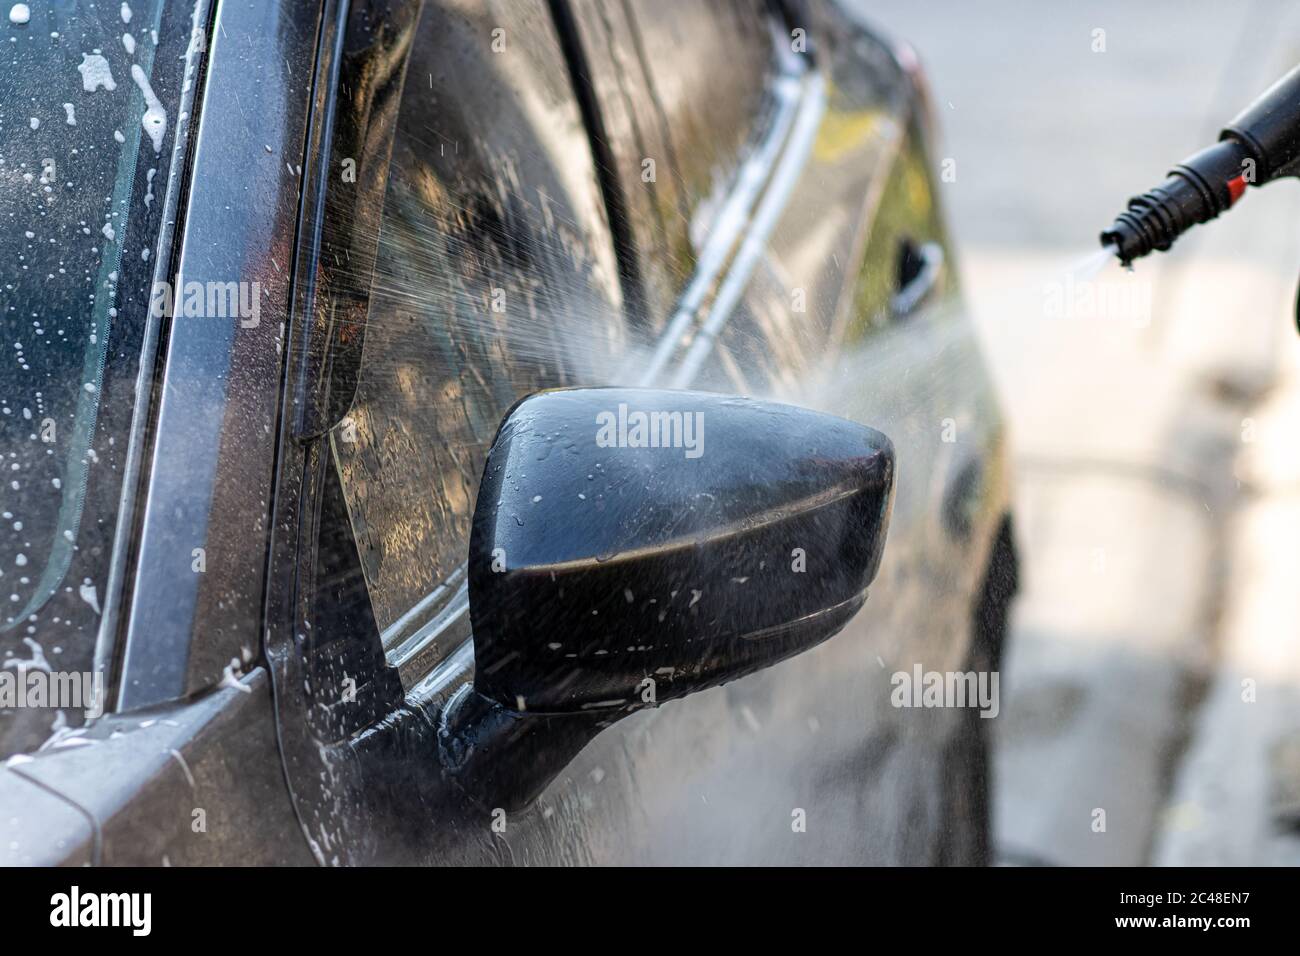 Lavage manuel de la voiture avec eau sous pression à l'extérieur. Homme nettoyant la voiture avec de l'eau sous haute pression dans une rue. Banque D'Images